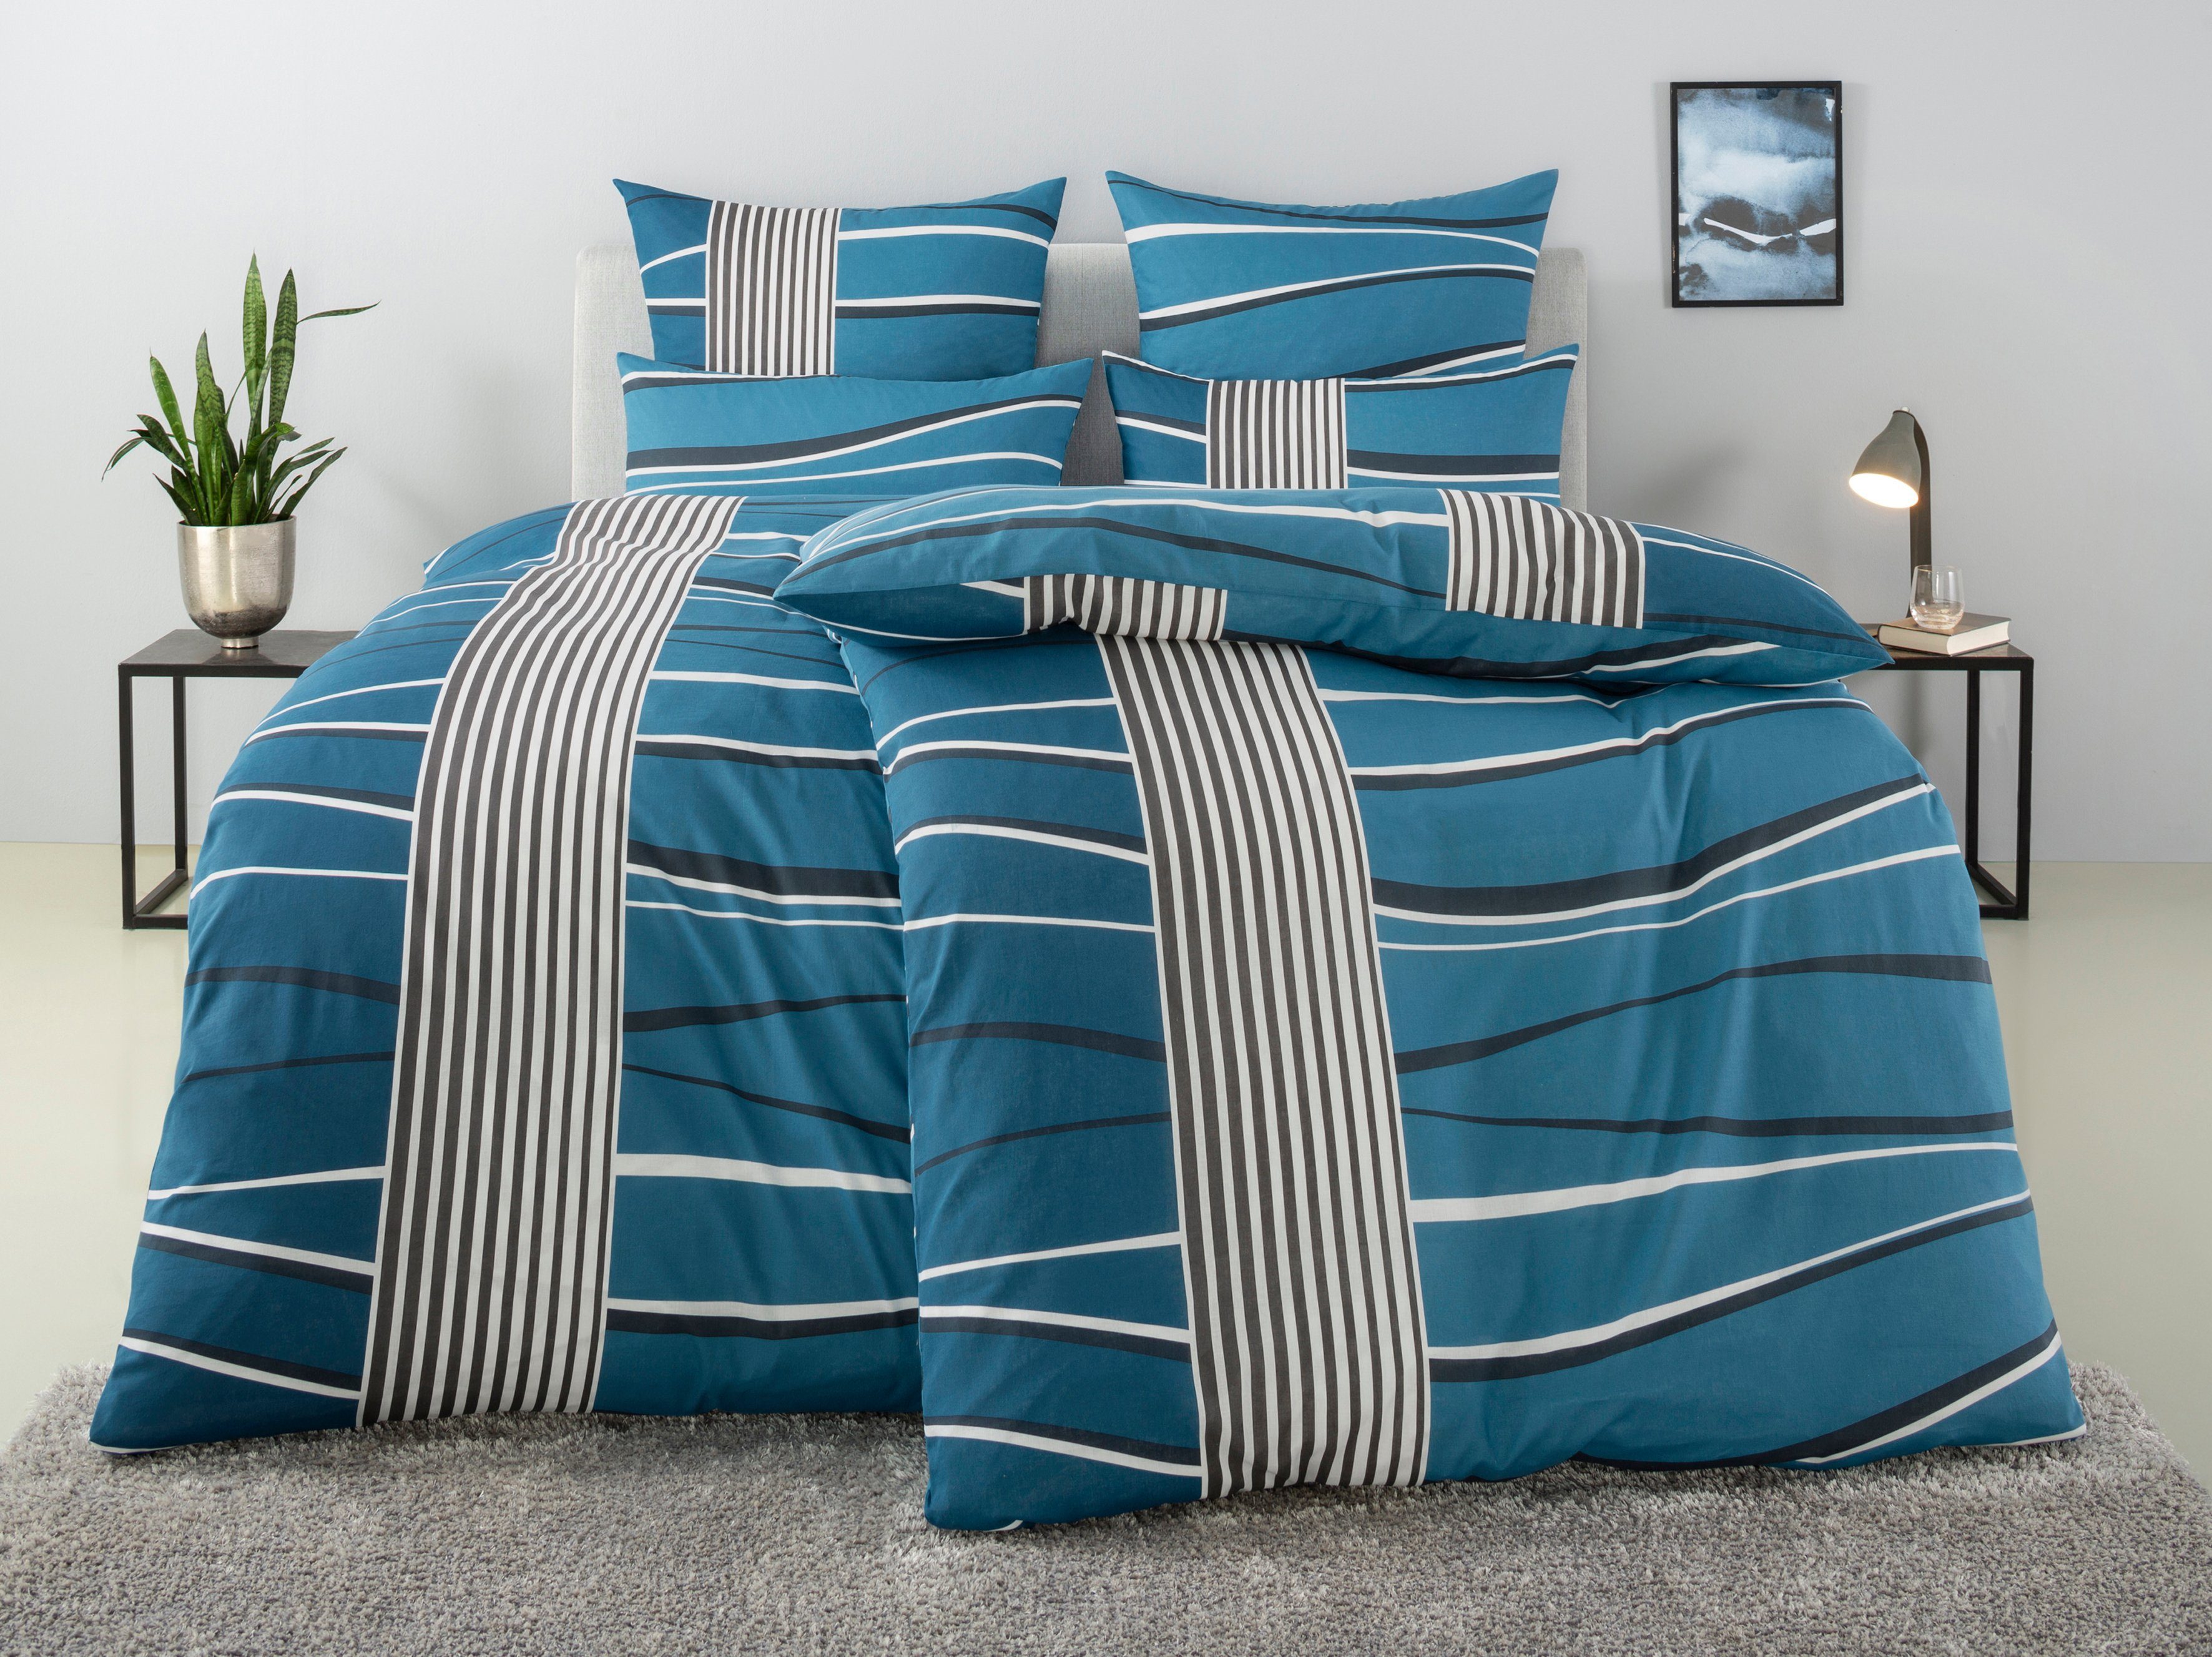 Bettwäsche Renu in Gr. 135x200 oder 155x220 cm, my home, Linon, 2 teilig, Bettwäsche aus Baumwolle, grafische Bettwäsche mit Wellen-Design blau | Bettwäsche-Sets